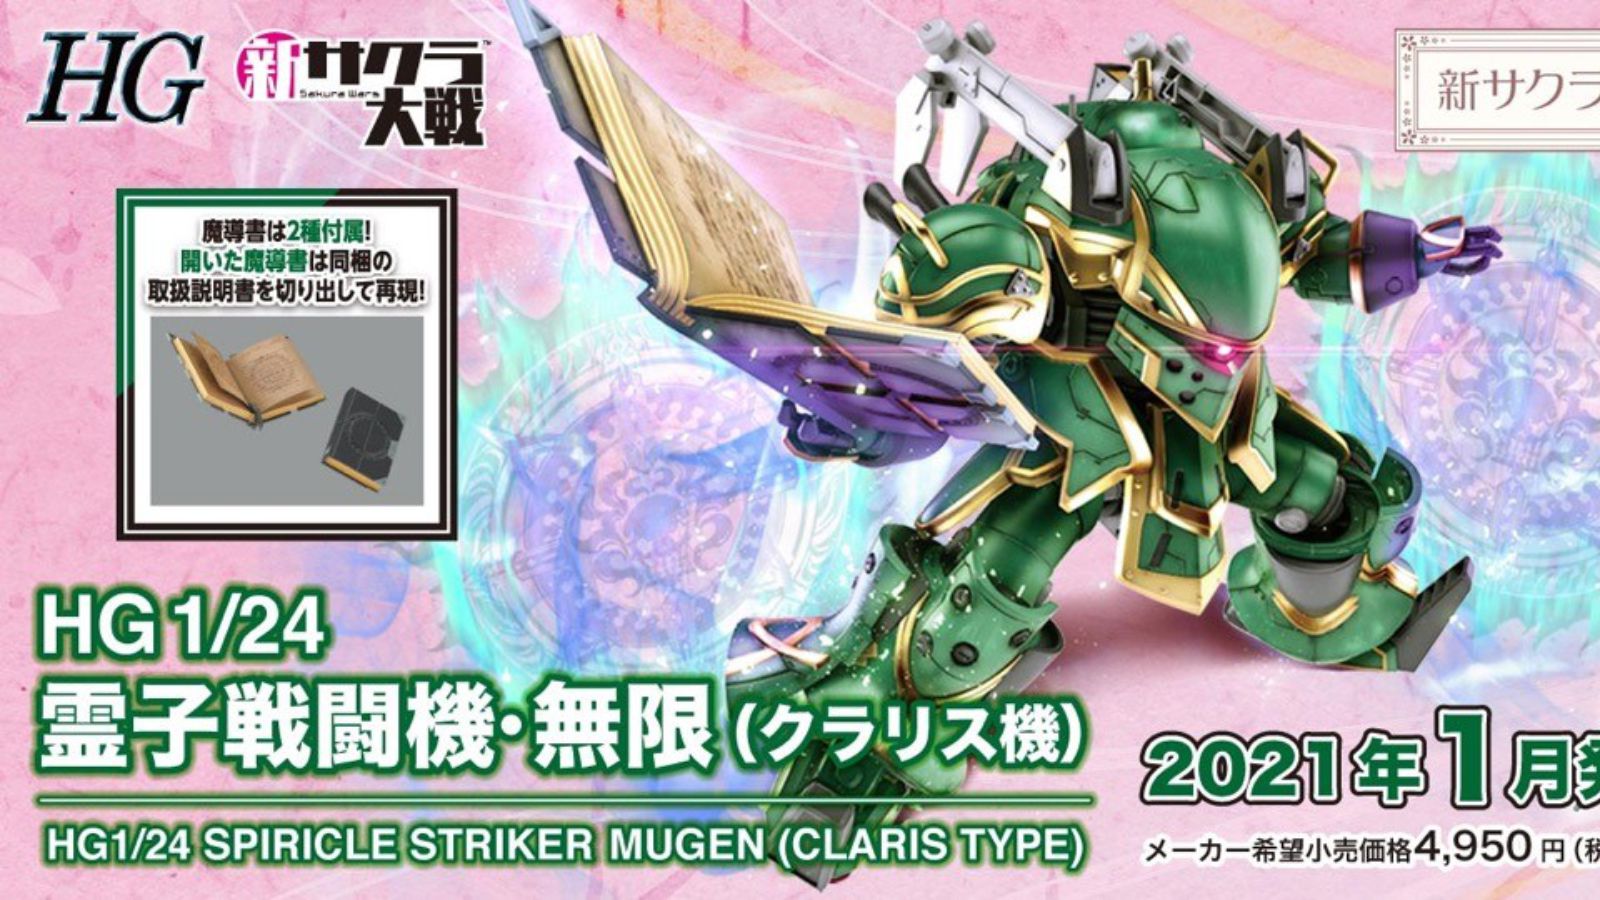 HG 1/24 Spiricle Strike Mugen (Claris Type) - Project Sakura Wars - Glacier Hobbies - Bandai